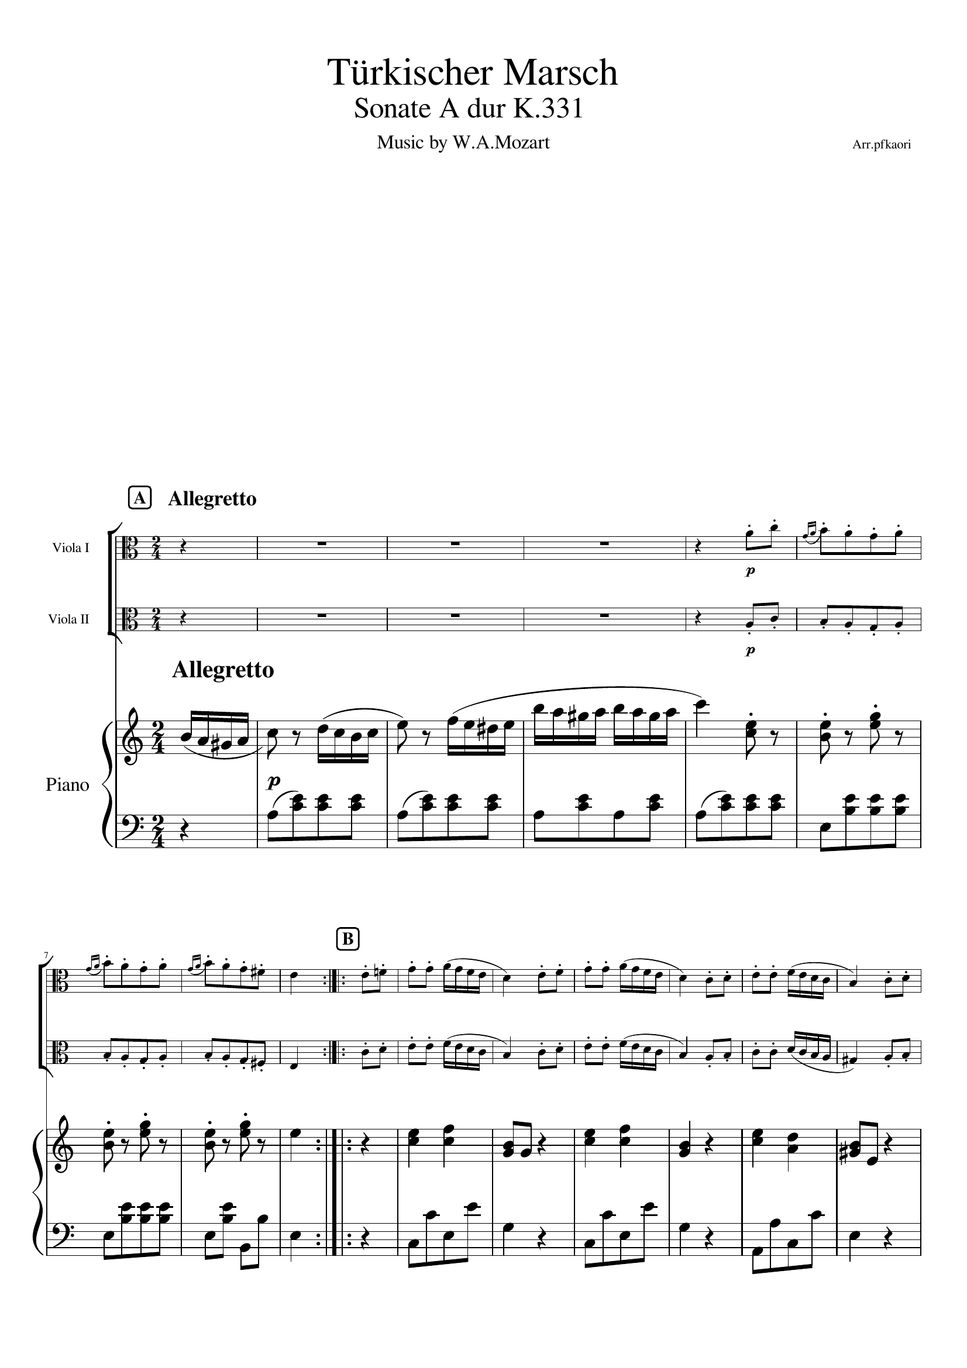 モーツアルト - トルコ行進曲 (ピアノトリオ/ヴィオラデュオ) by pfkaori